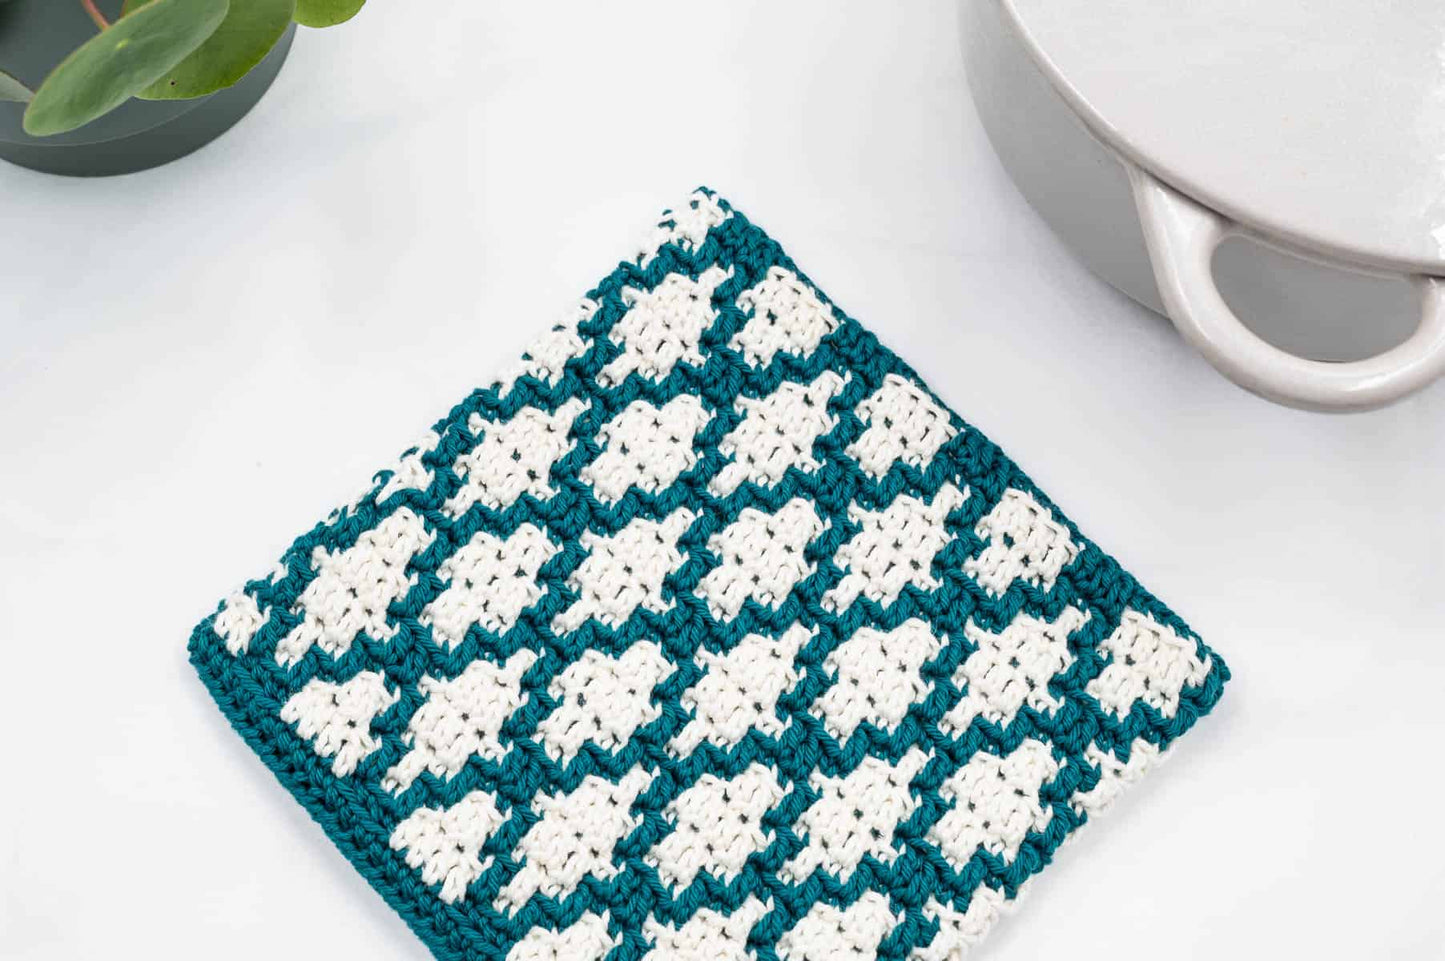 Mosaic Crochet Hot Pad Pattern